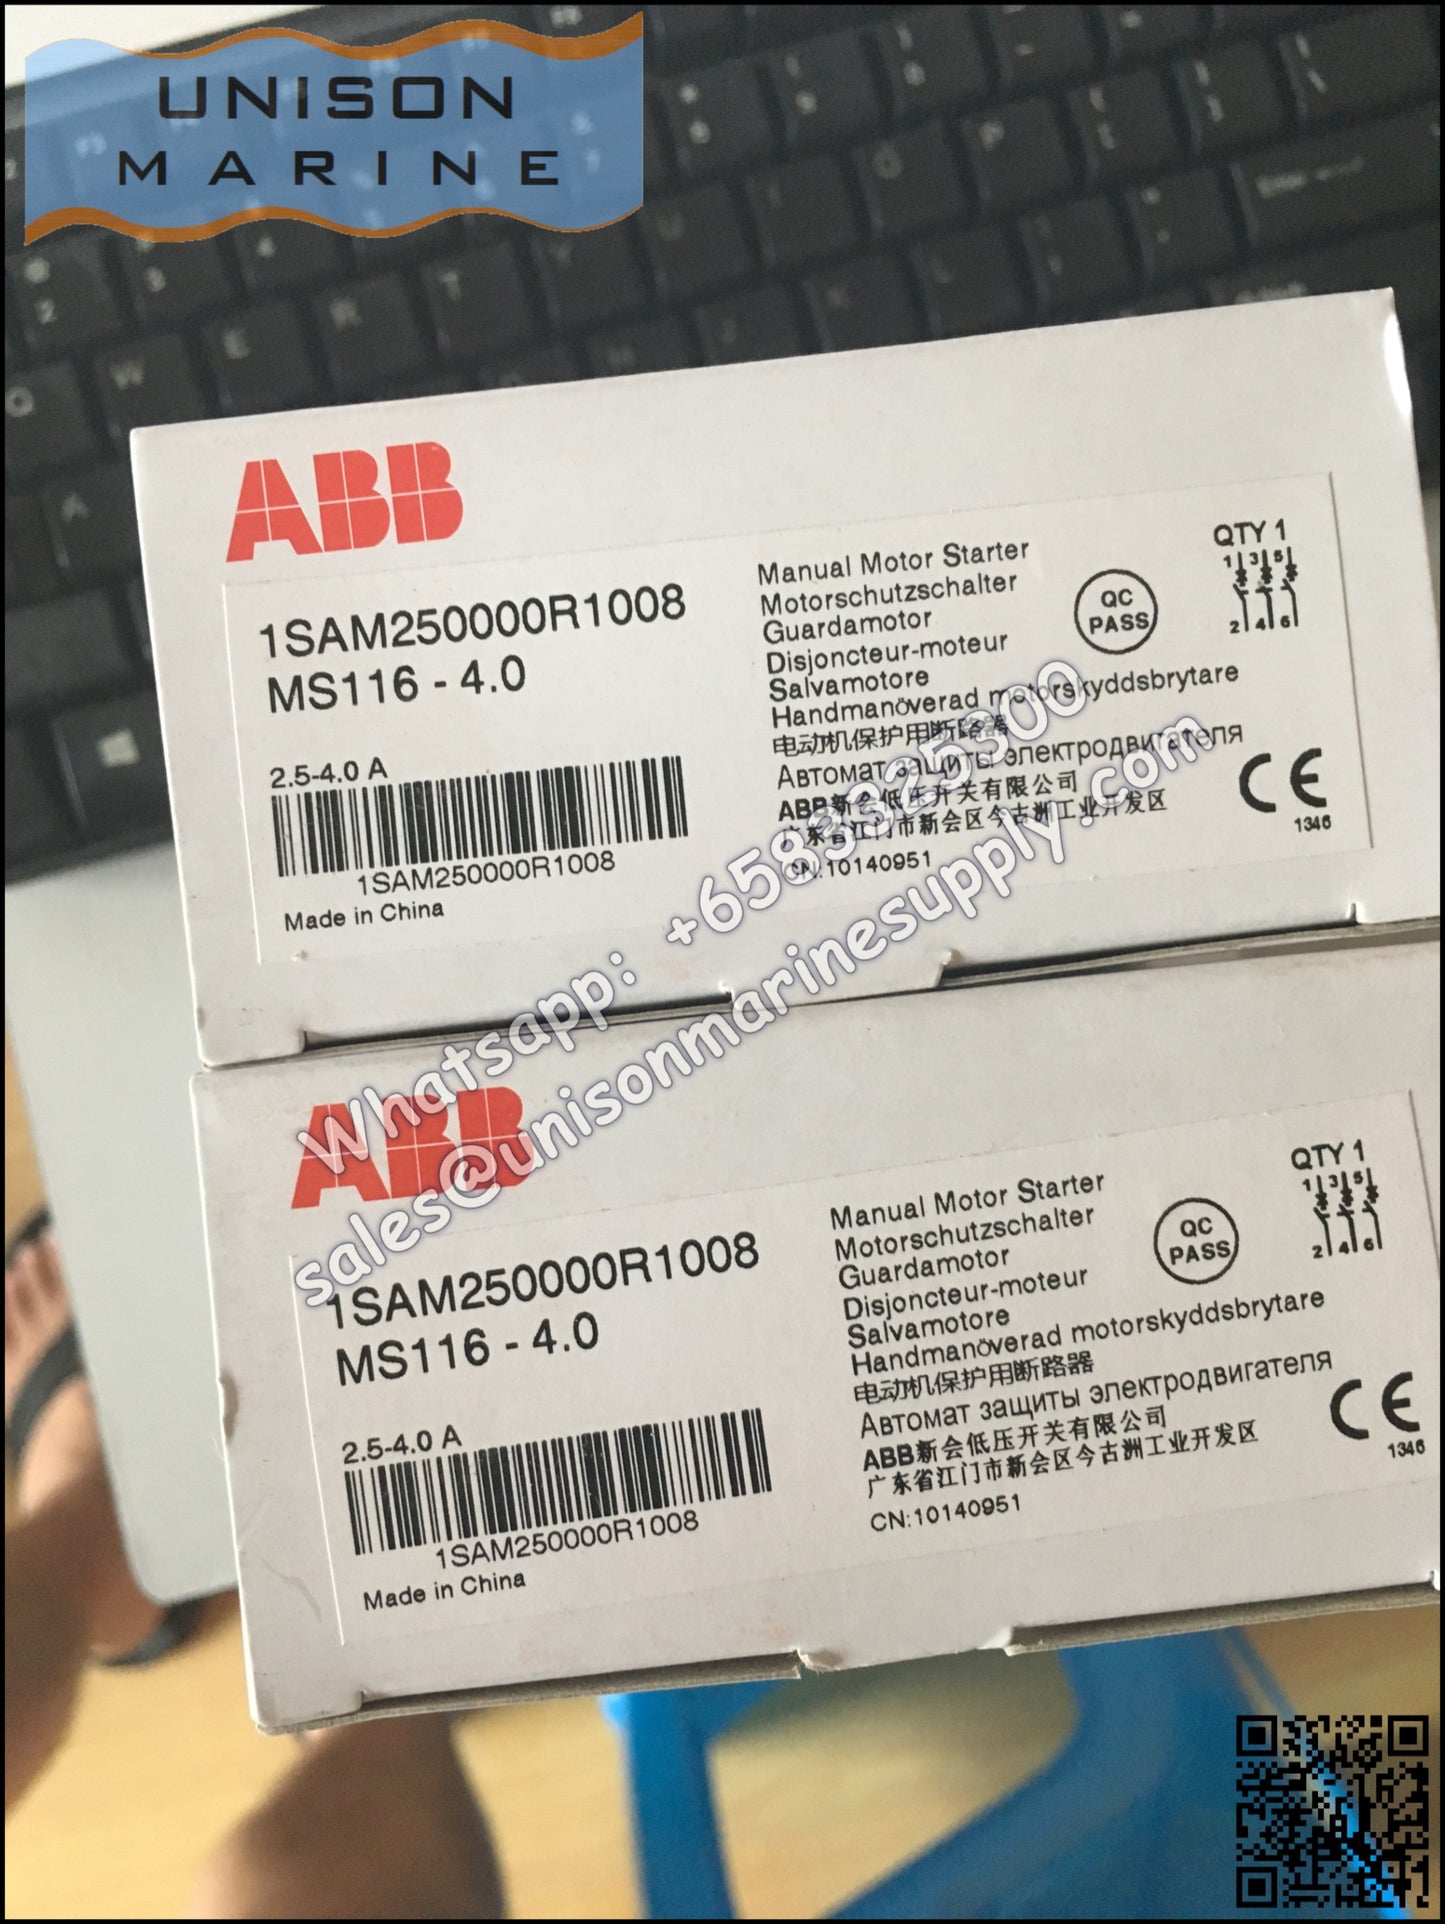 ABB Manual Motor Starter MS116-4.0 1SAM250000R1008